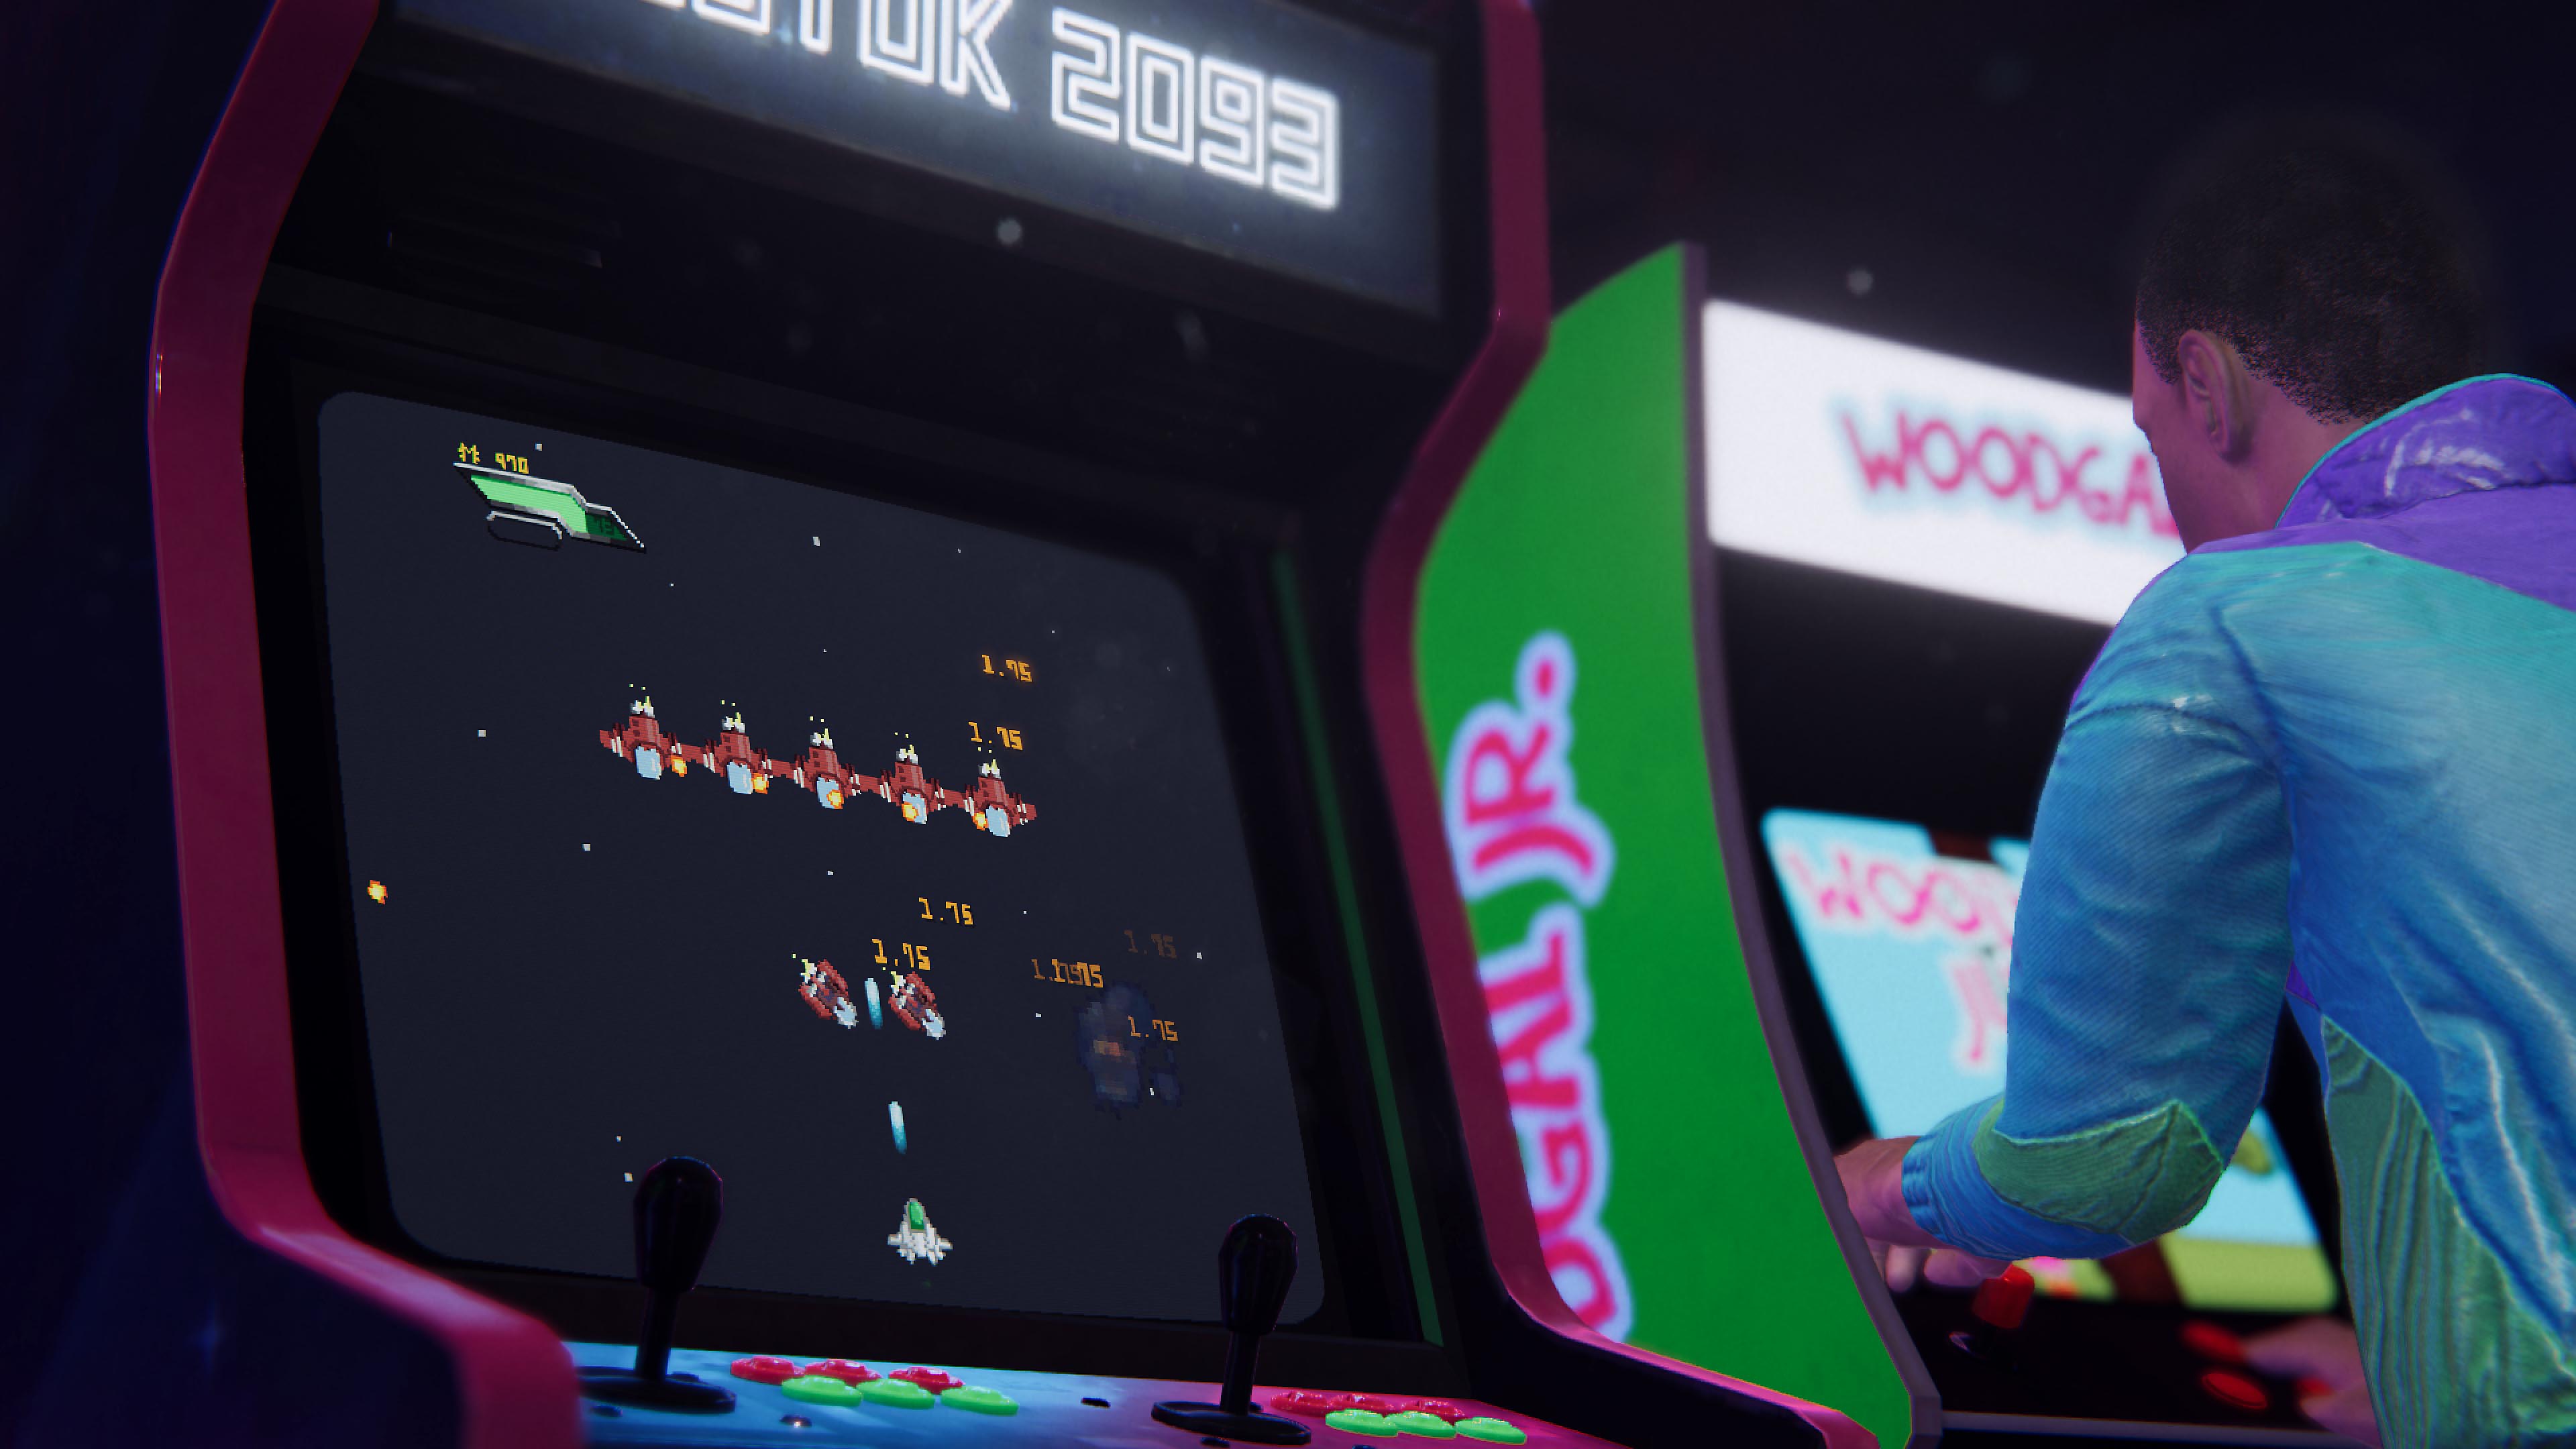 لقطة شاشة للعبة Arcade Paradise تعرض جهازي ألعاب كلاسيكية